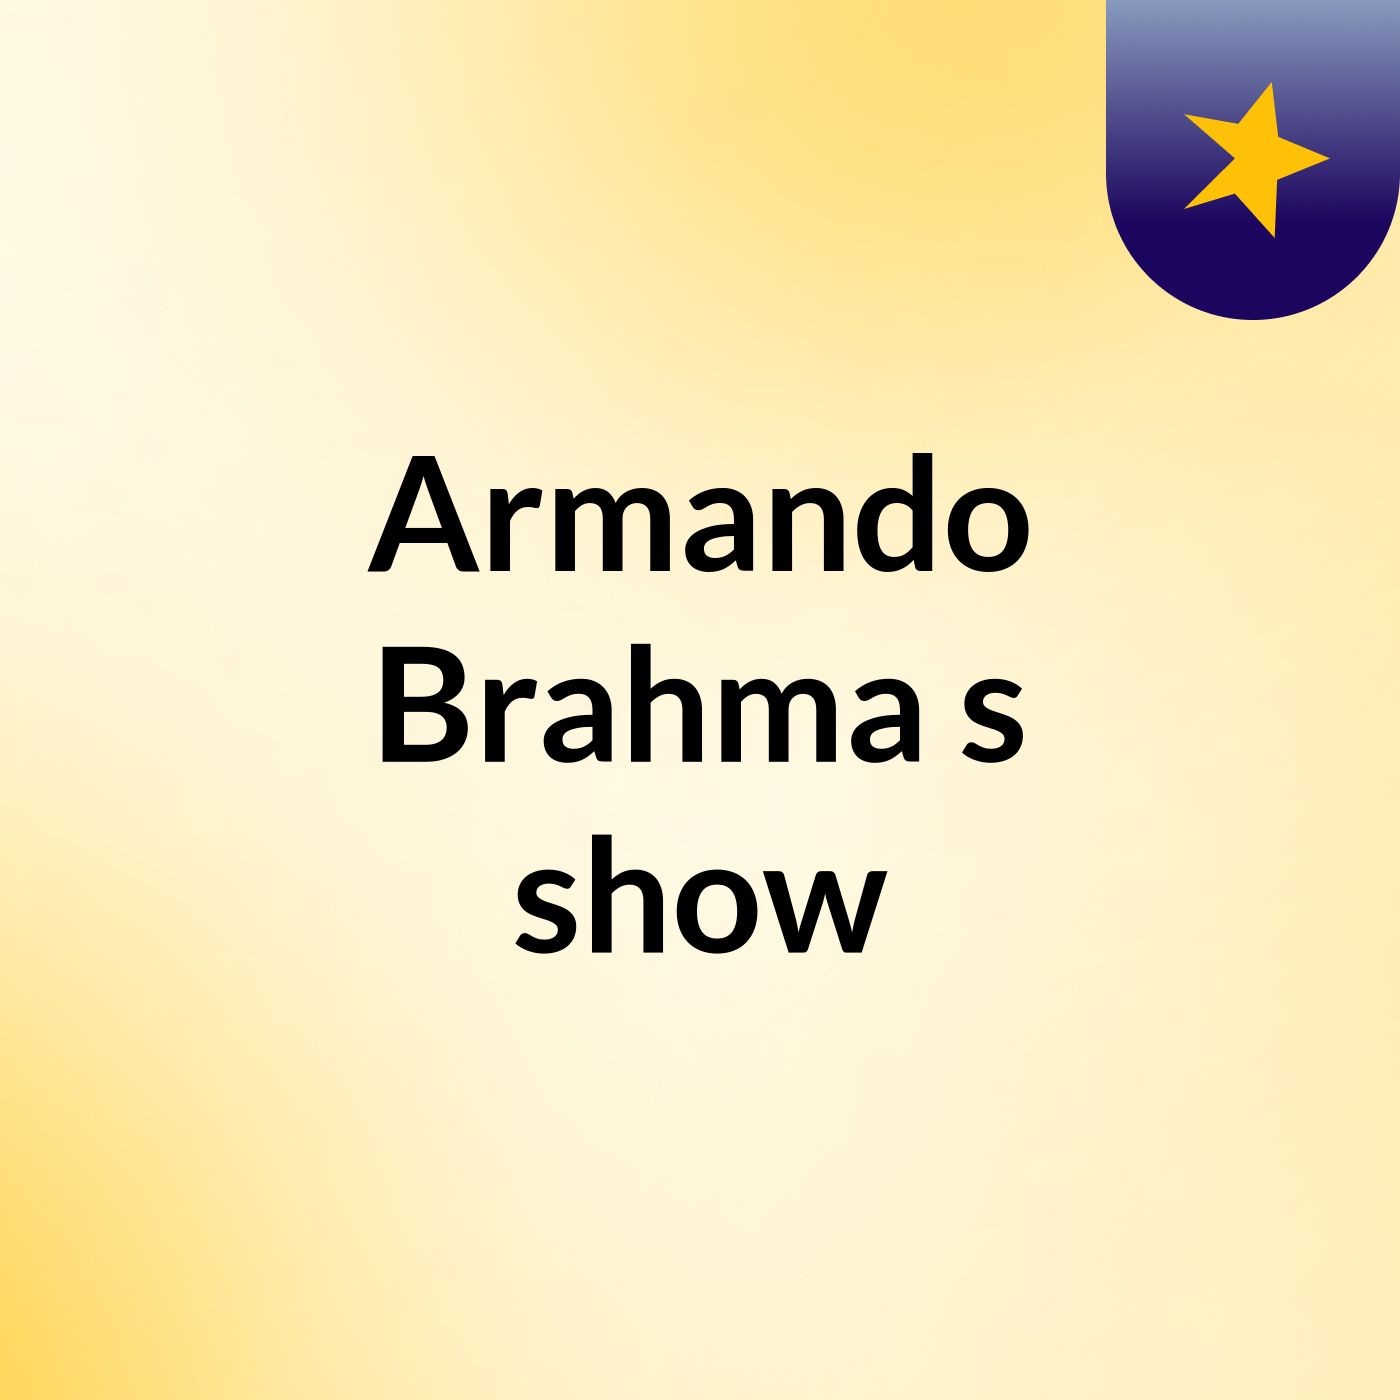 Armando Brahma's show